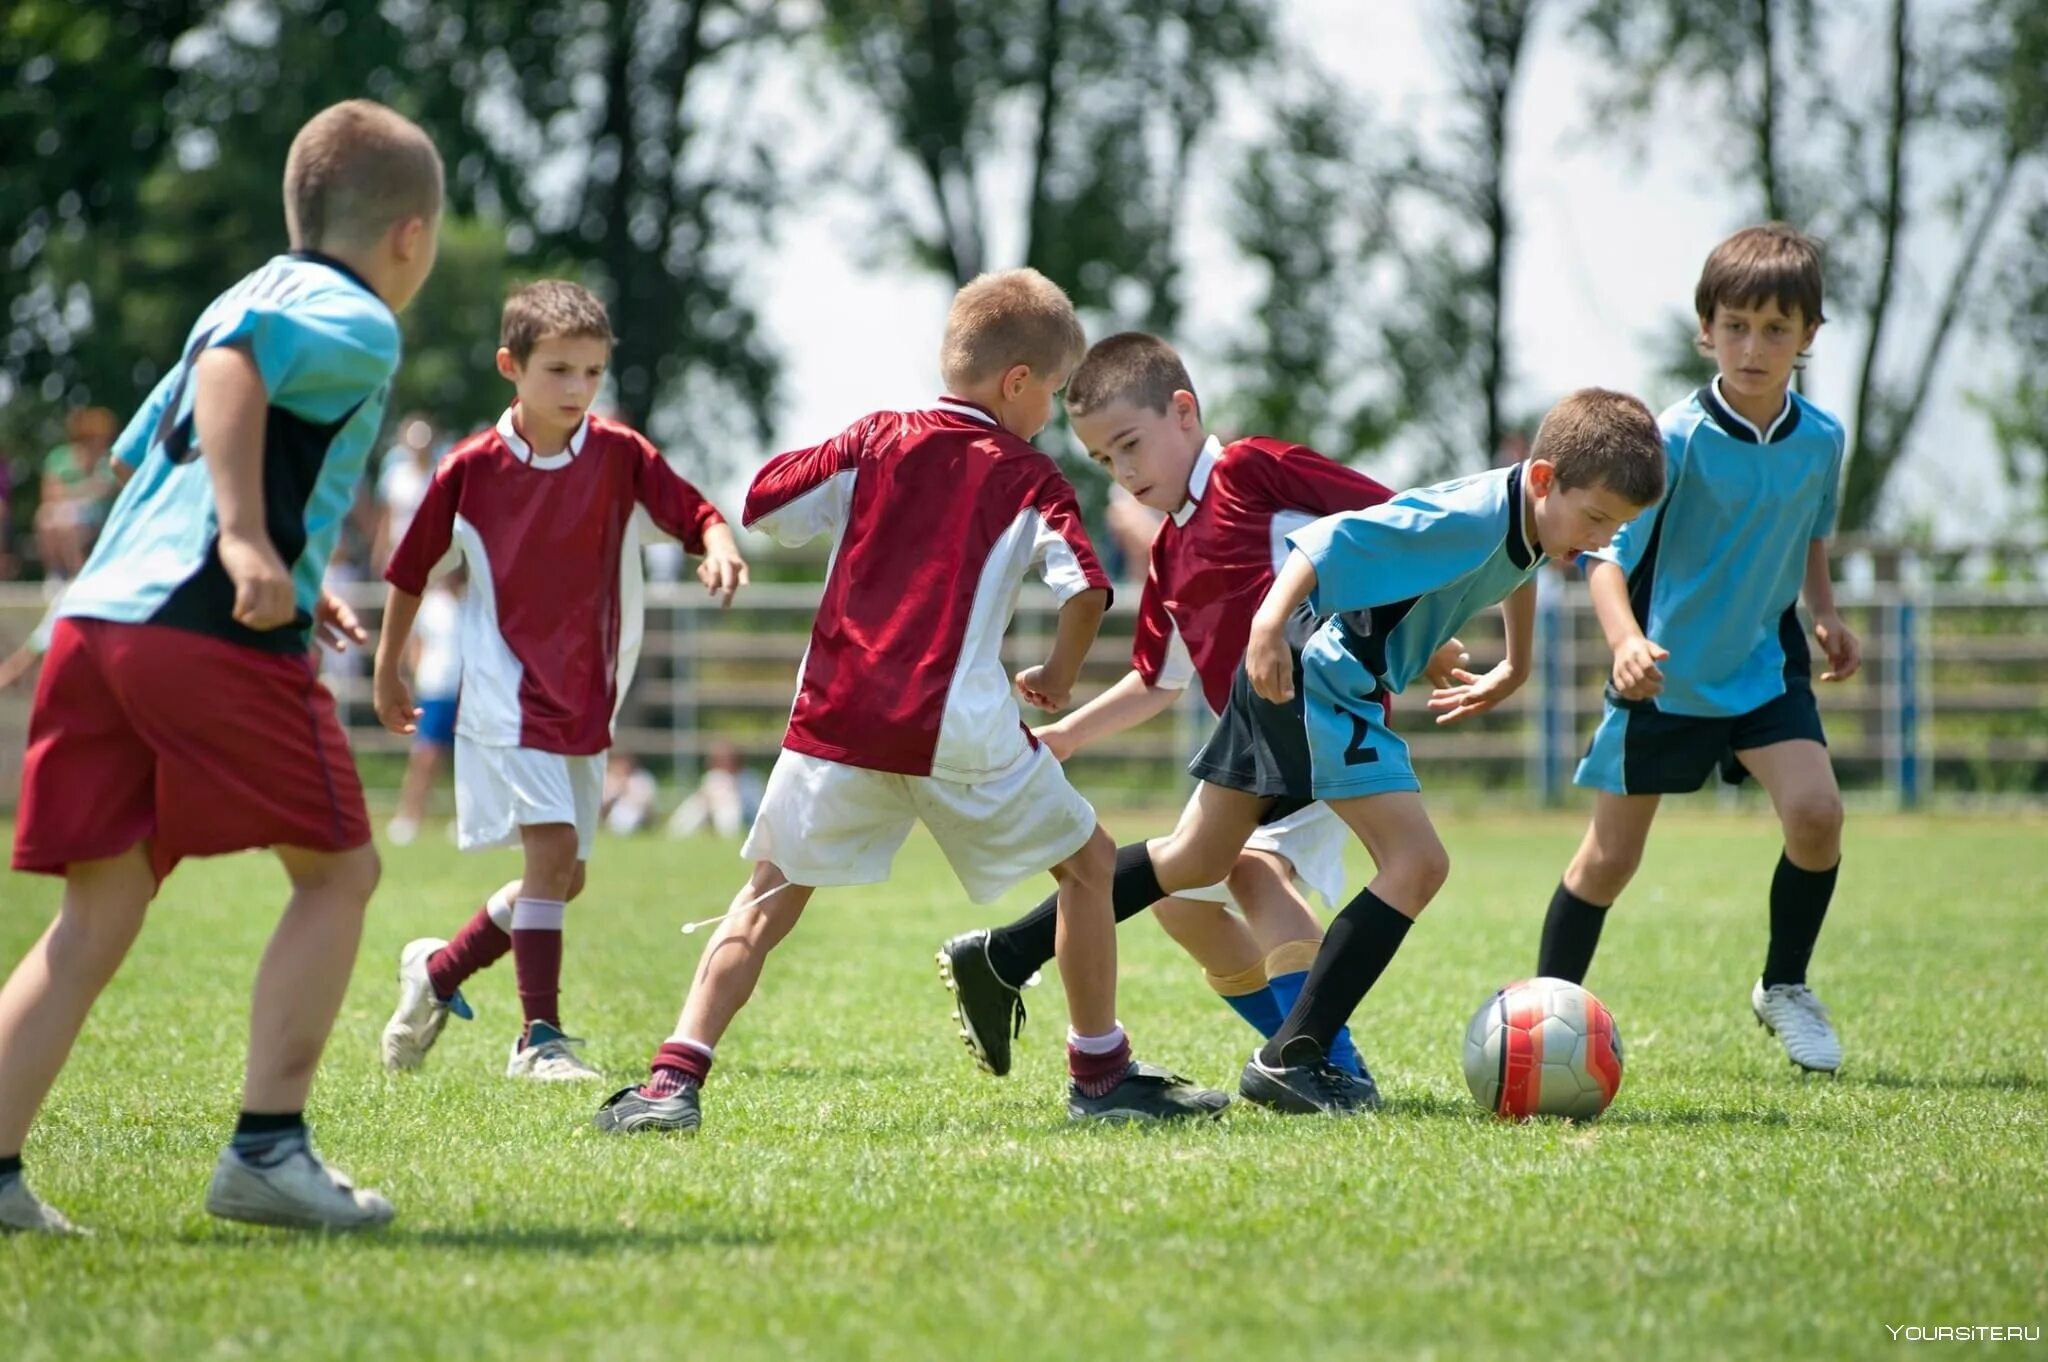 Много игроков играем. Детский спорт. Футбол дети. Спортивные дети. Дети играющие в футбол.